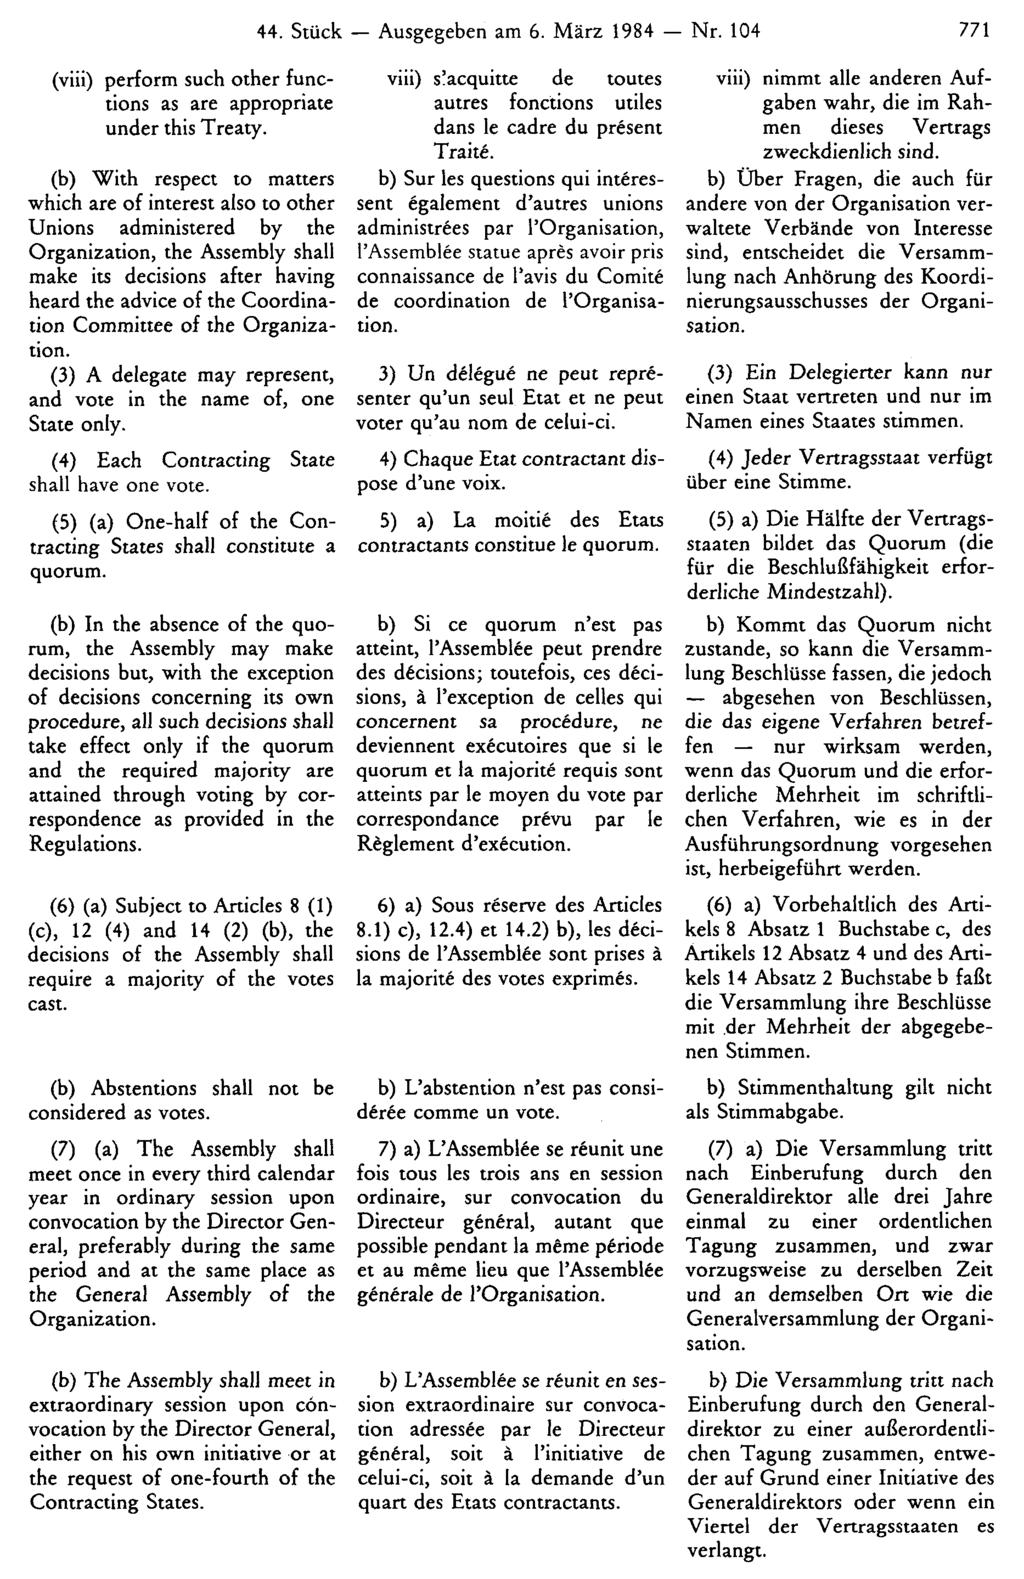 44. Stück Ausgegeben am 6. März 1984 Nr. 104 771 viii) nimmt alle anderen Aufgaben wahr, die im Rahmen dieses Vertrags zweckdienlich sind.